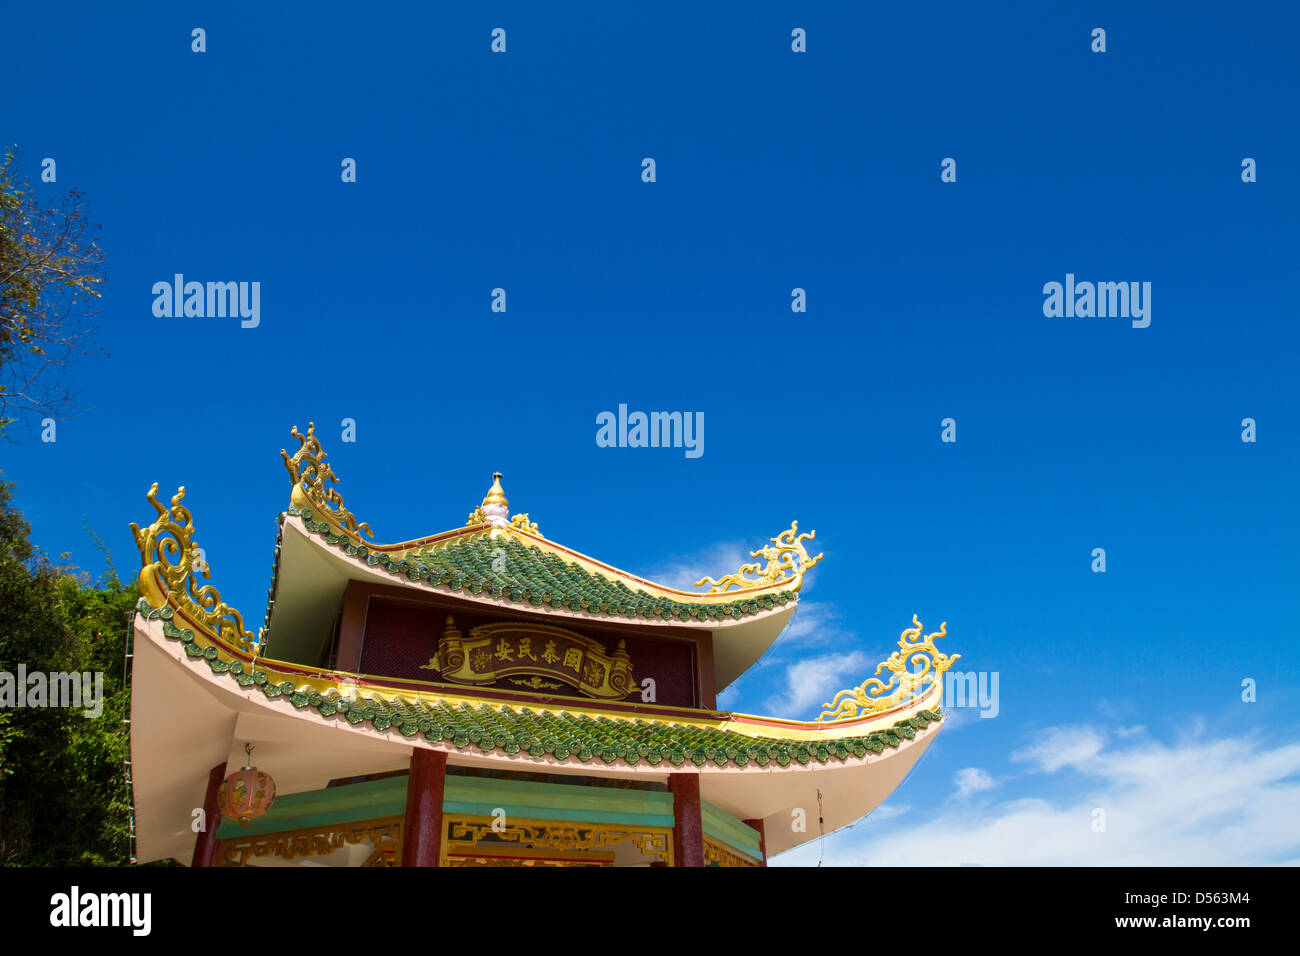 Asiatische Dach unter dem blauen Himmel Stockfoto